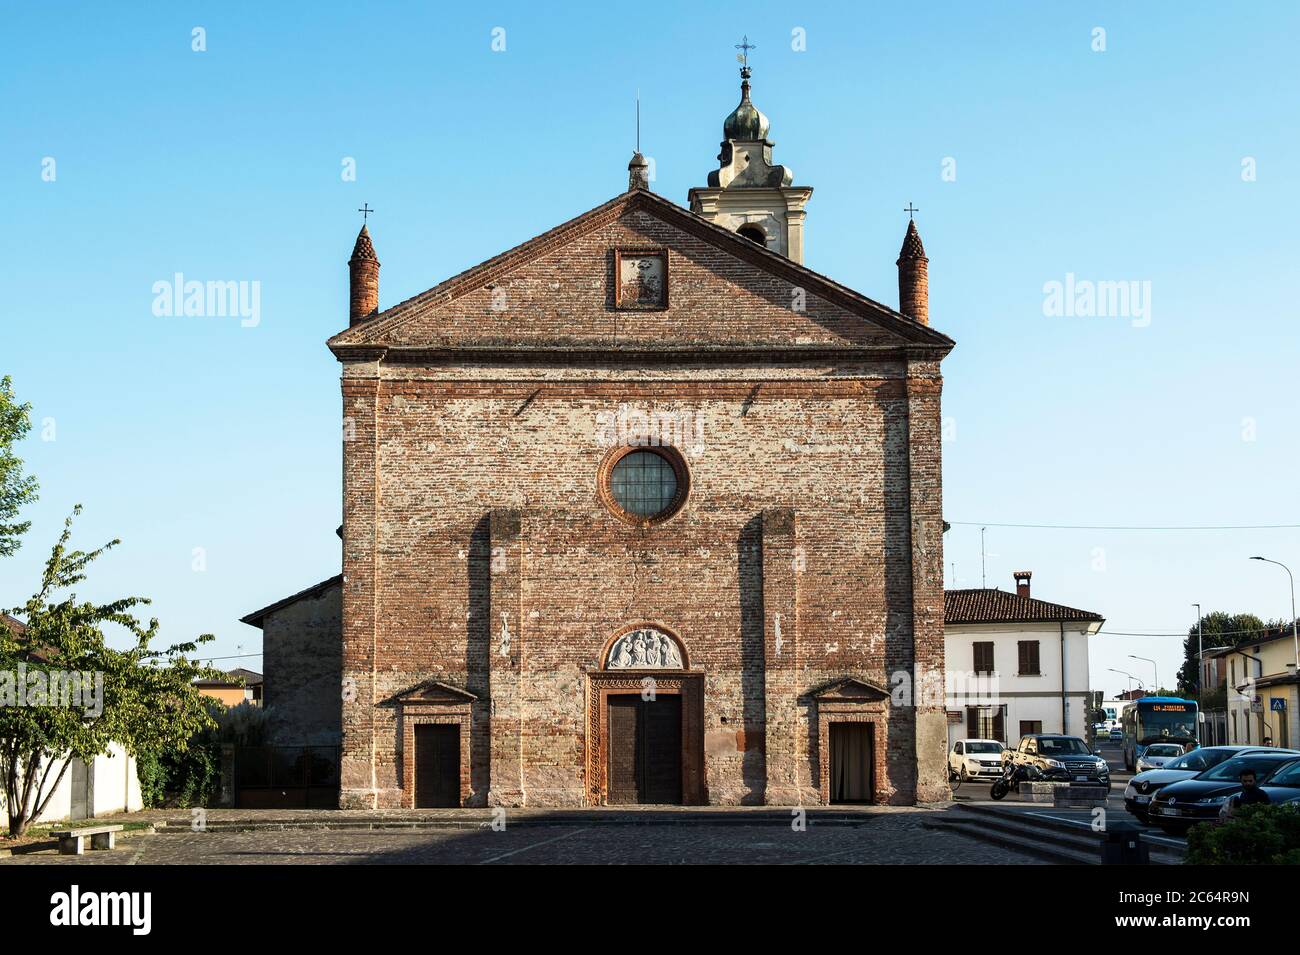 Italien, Lombardei, Castiglione d'Adda, Chiesa Incoronata Stockfoto